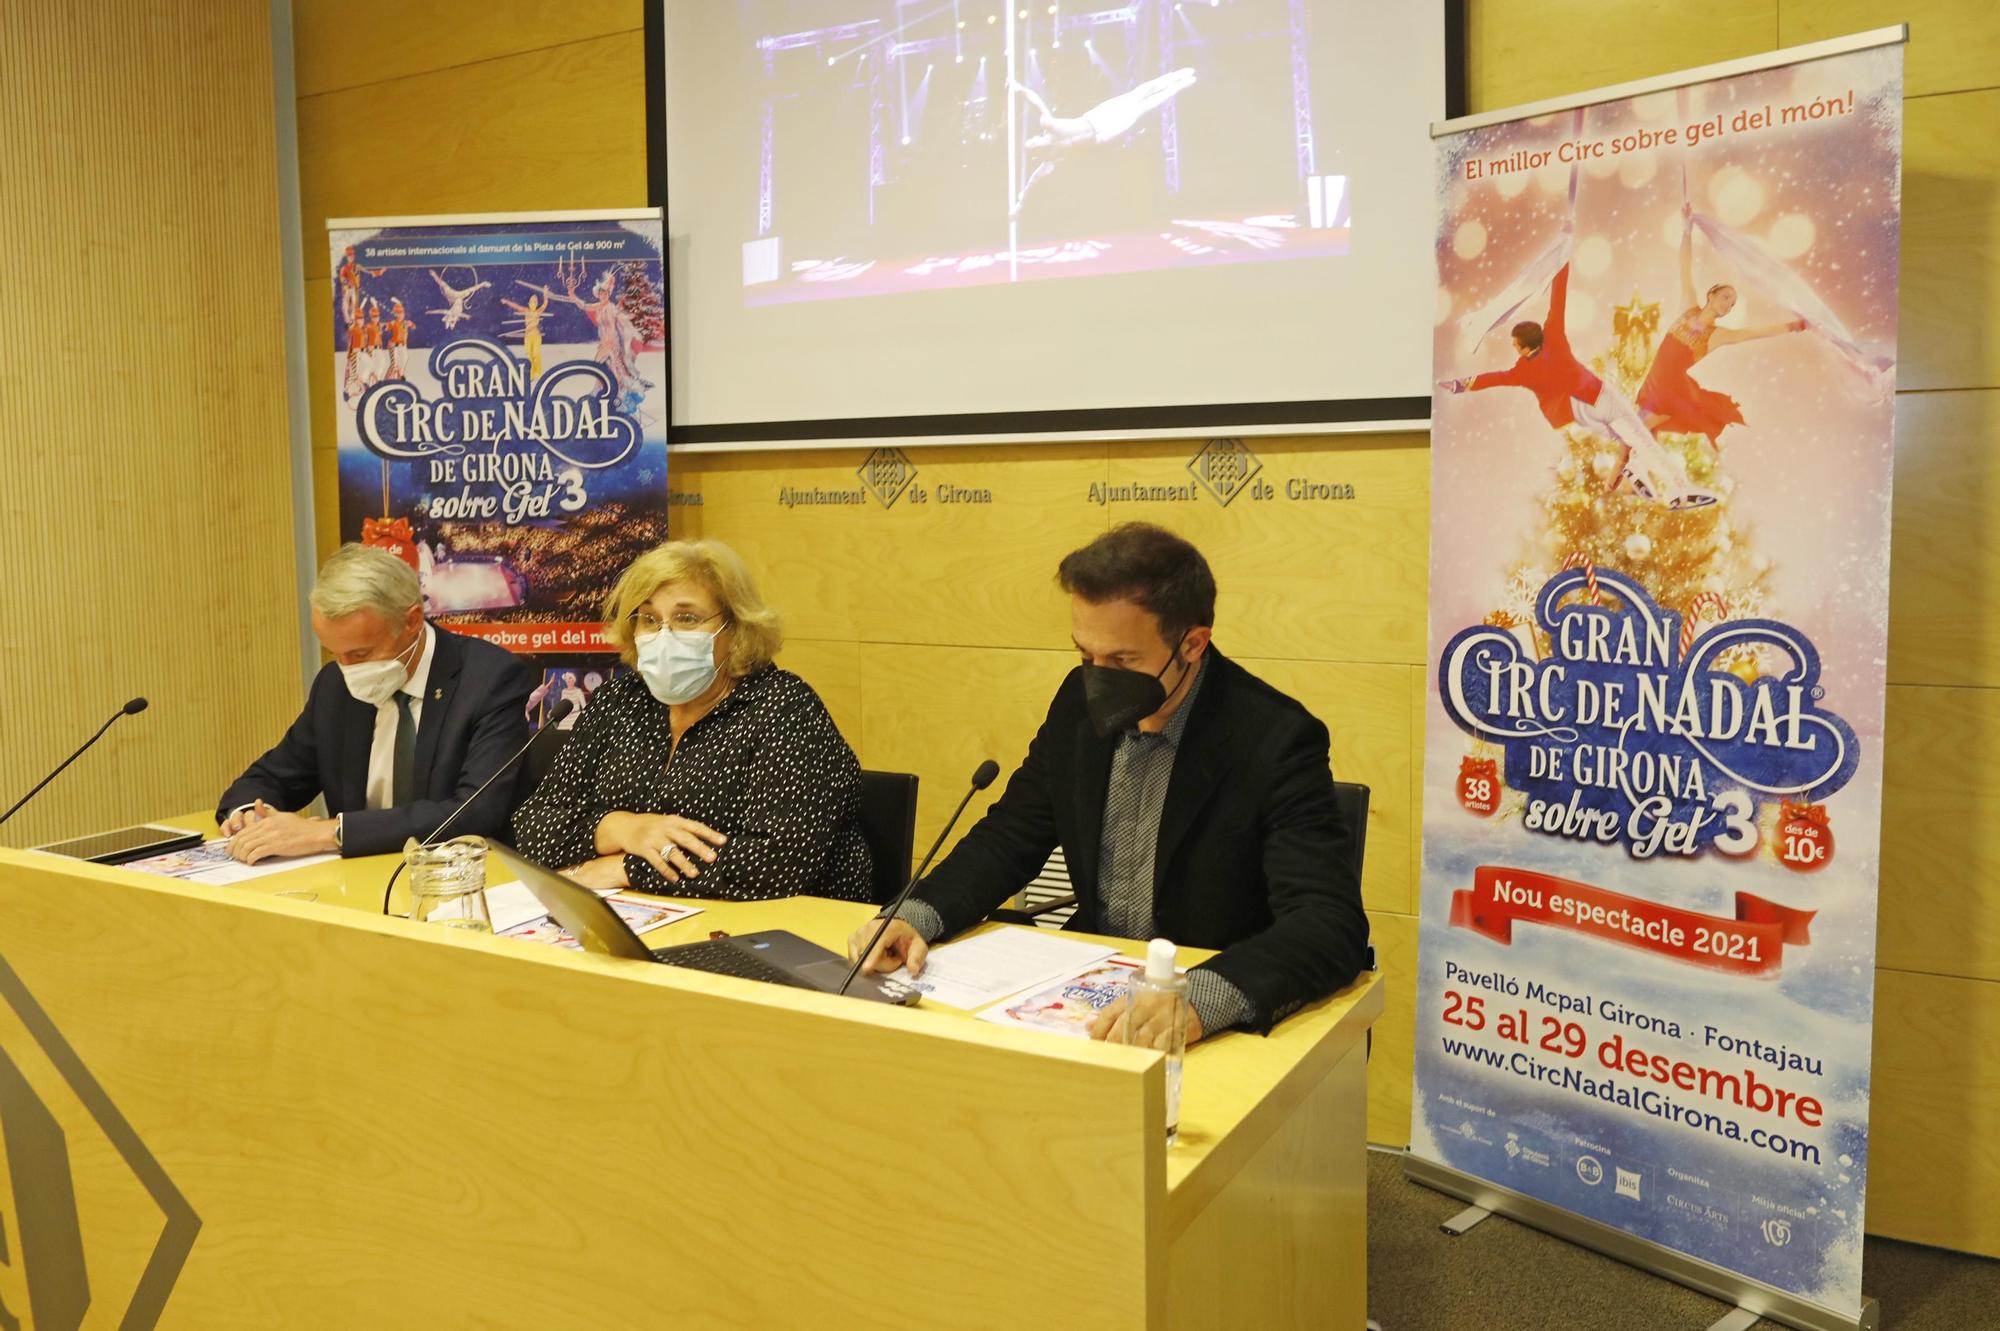 El Circ de Nadal de Girona instal·larà una pista de gel de 900 m² al pavelló de Fontajau